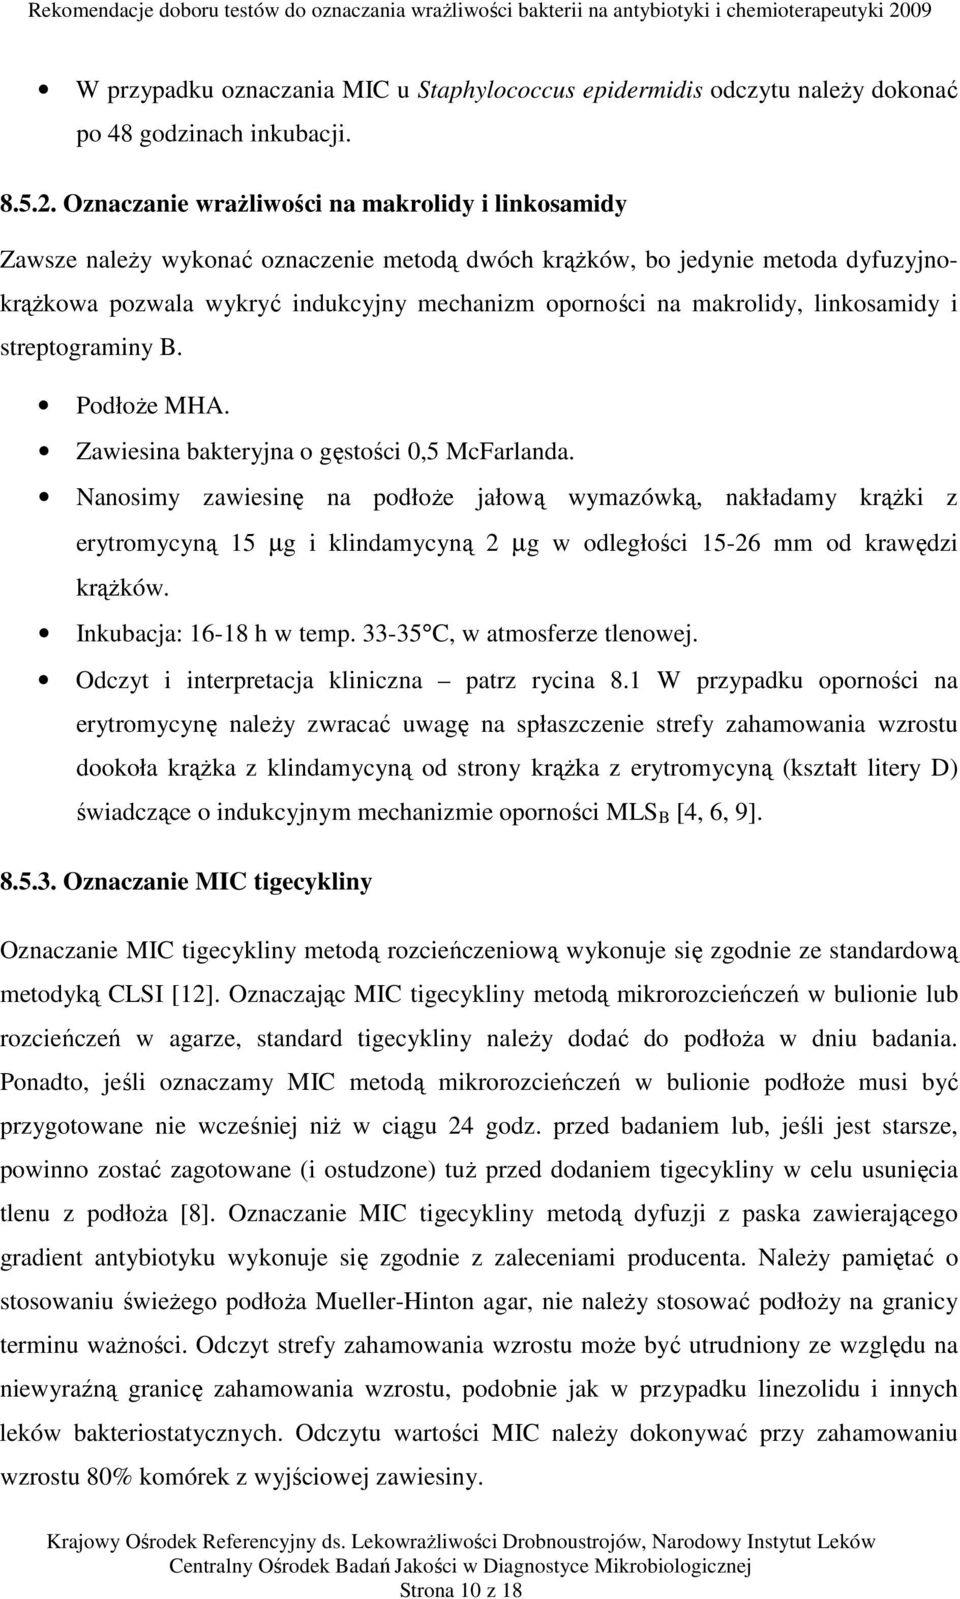 makrolidy, linkosamidy i streptograminy B. Podłoże MHA. Zawiesina bakteryjna o gęstości 0,5 McFarlanda.